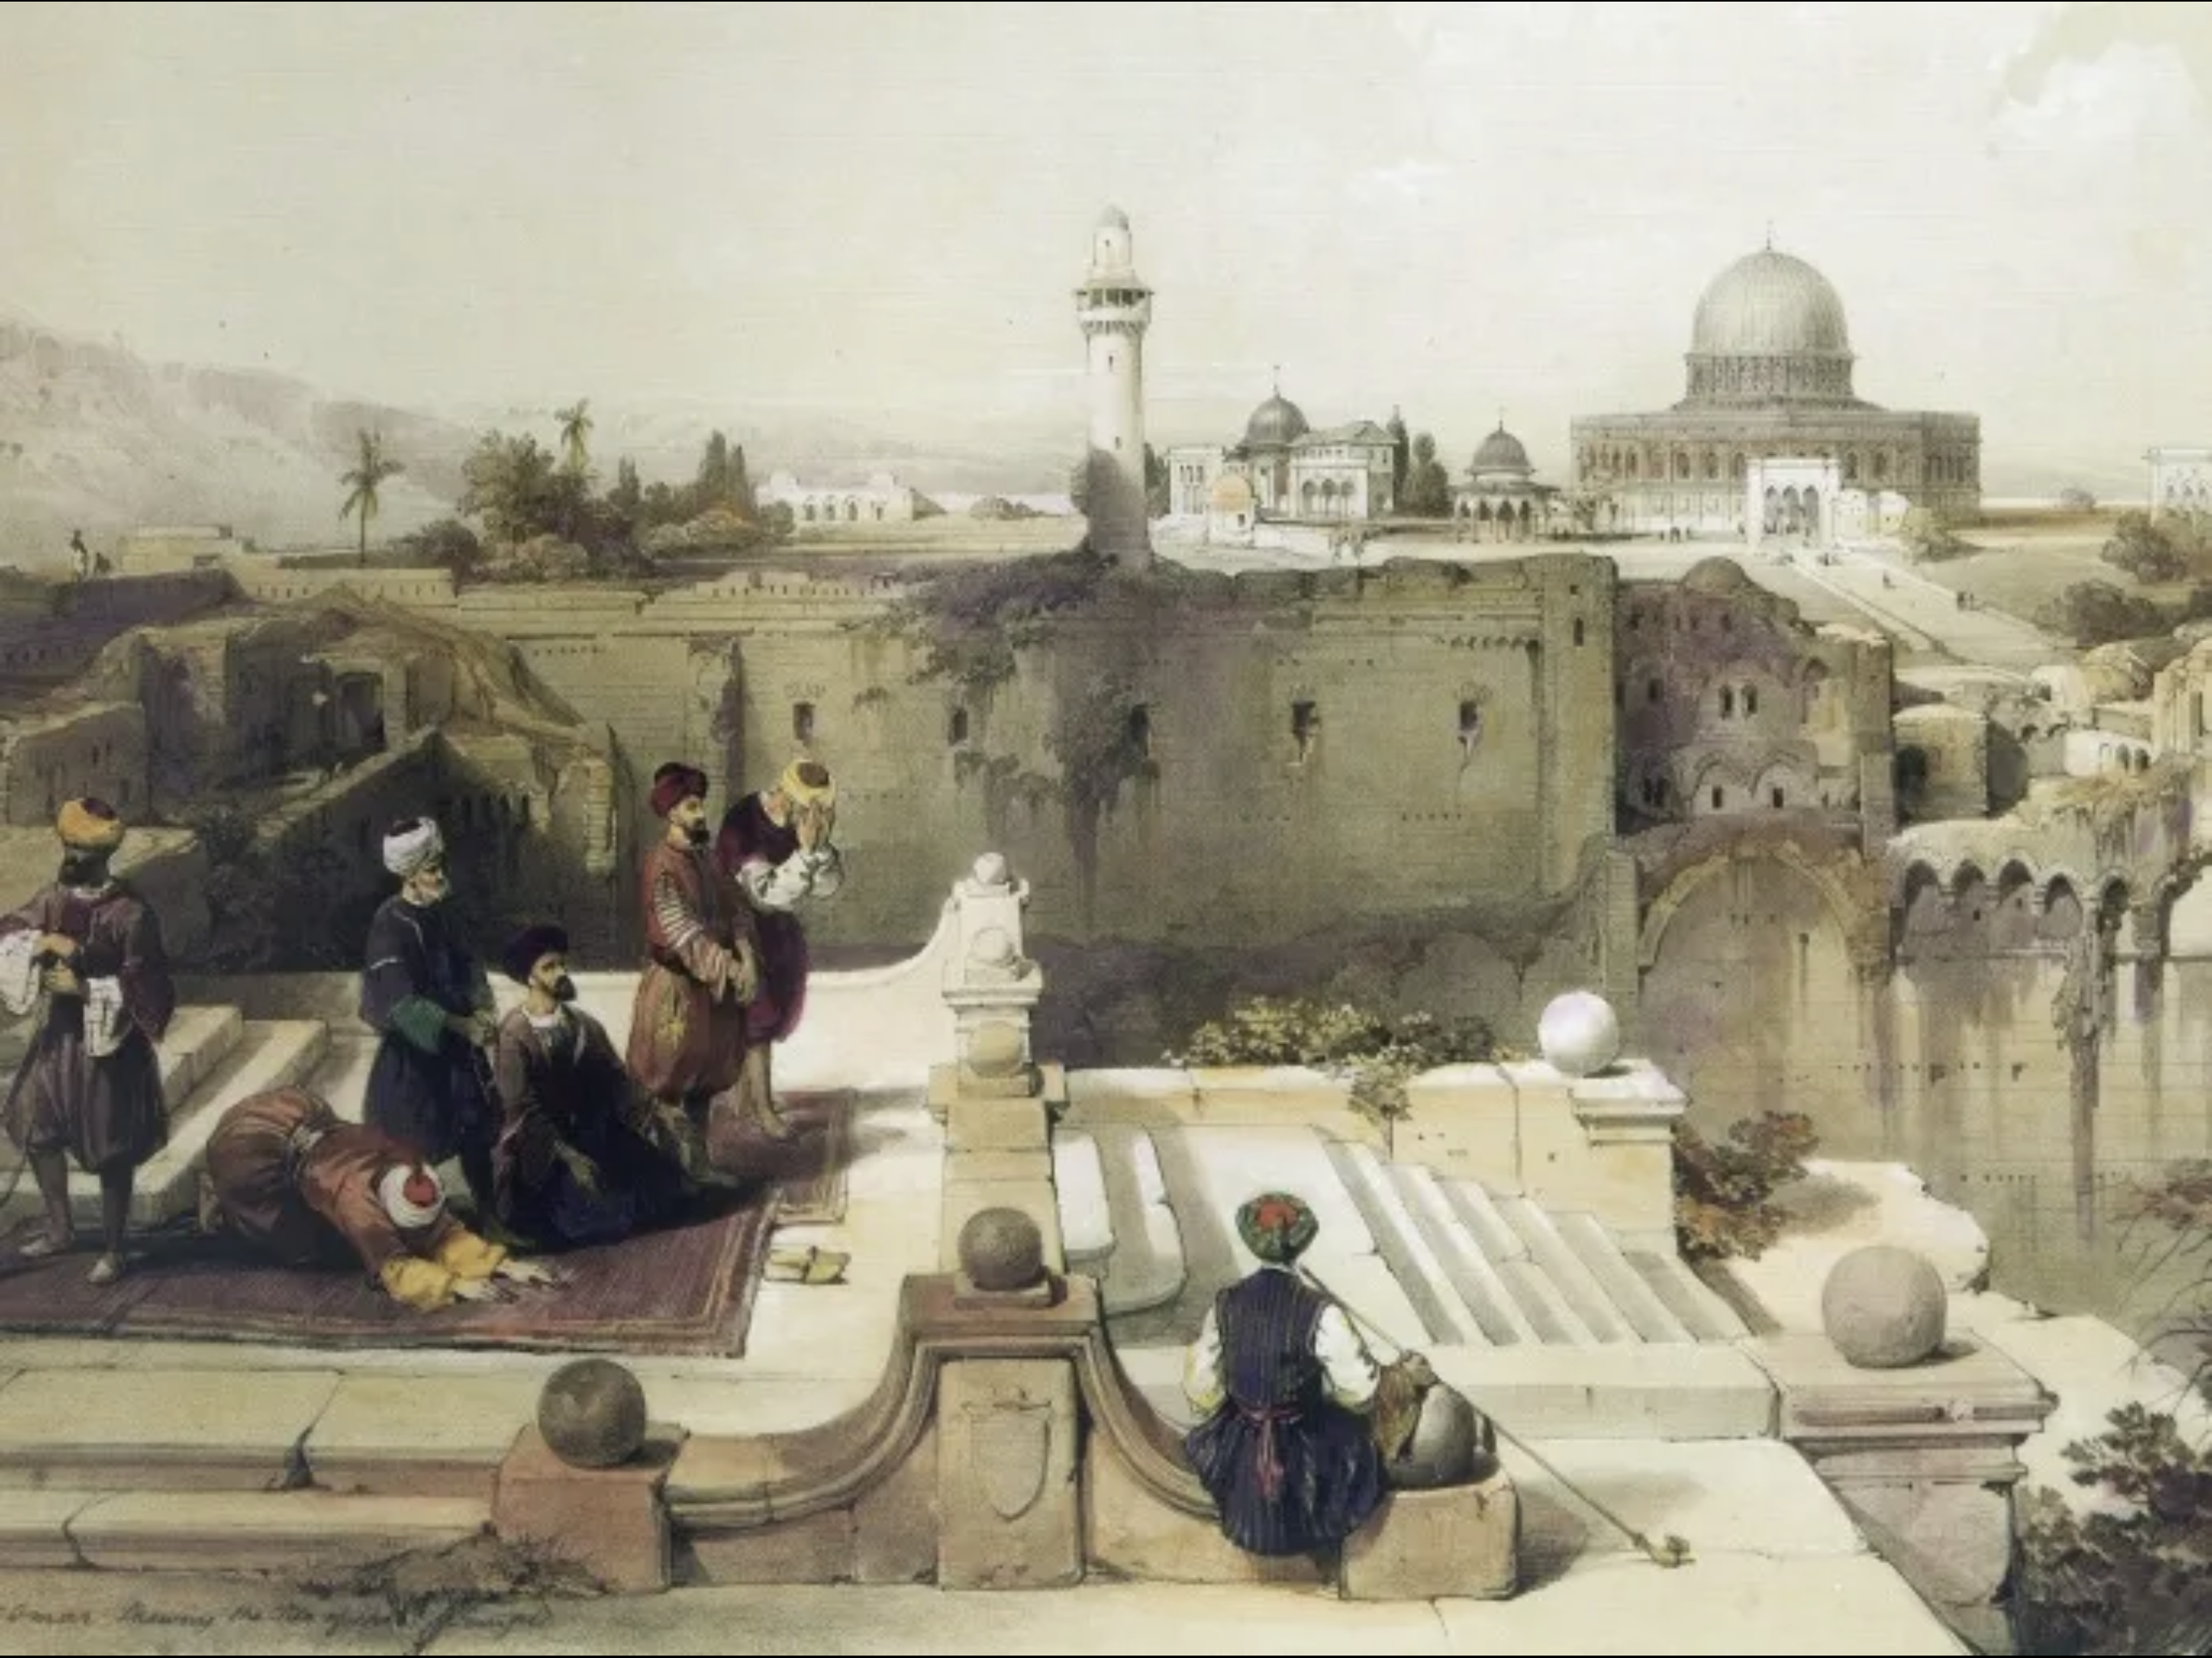 لوحة من كتاب "القدس مشاهد بانورامية"